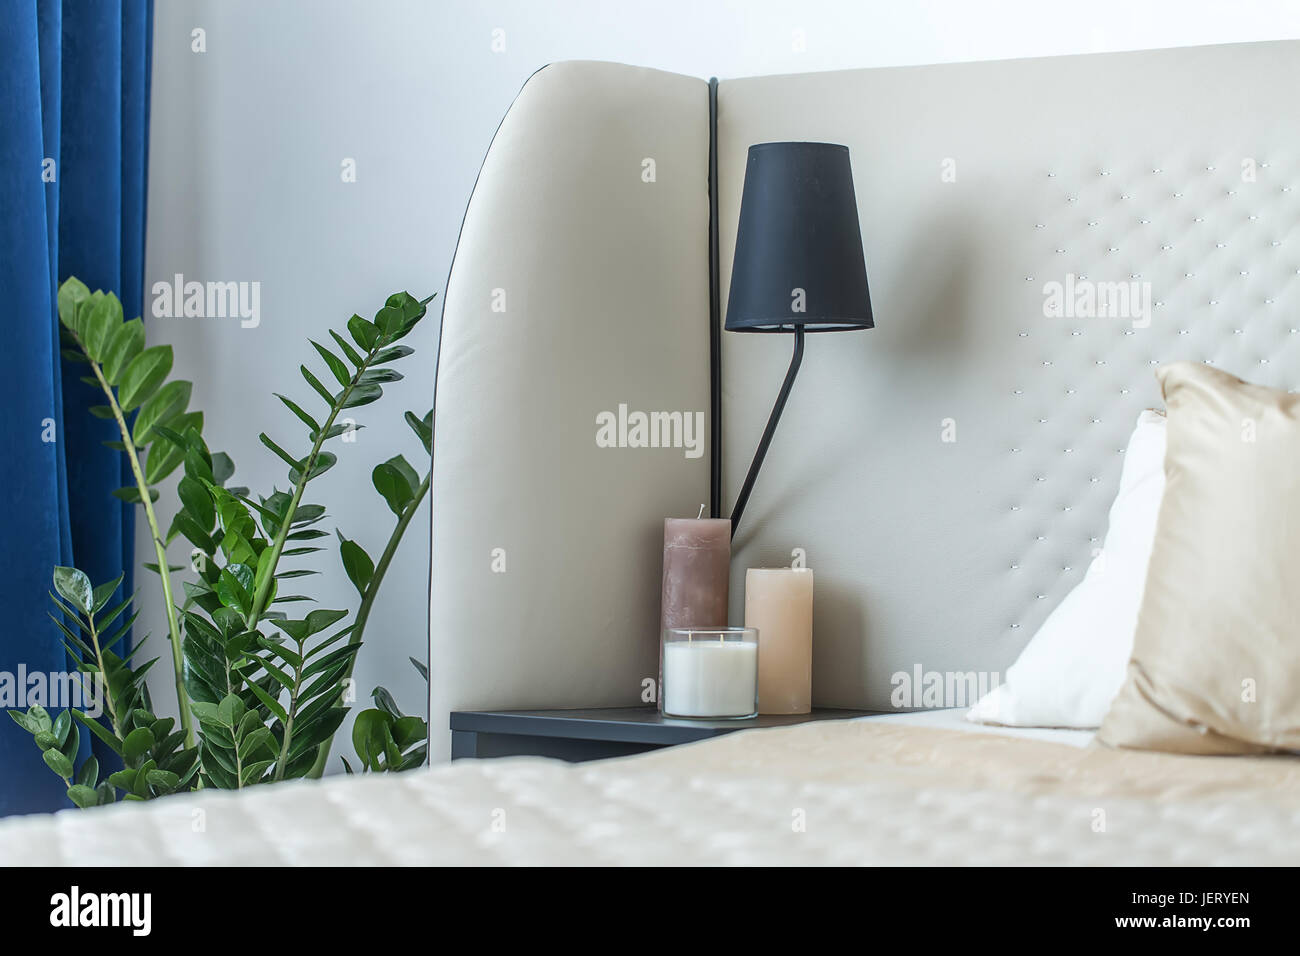 Bett mit Kissen auf die Lichtwand Hintergrund. Auf der linken Seite gibt es eine dunkle Nighstand mit Kerzen und einer Lampe, Grünpflanze, blauen Vorhang. Closeup. Indo Stockfoto